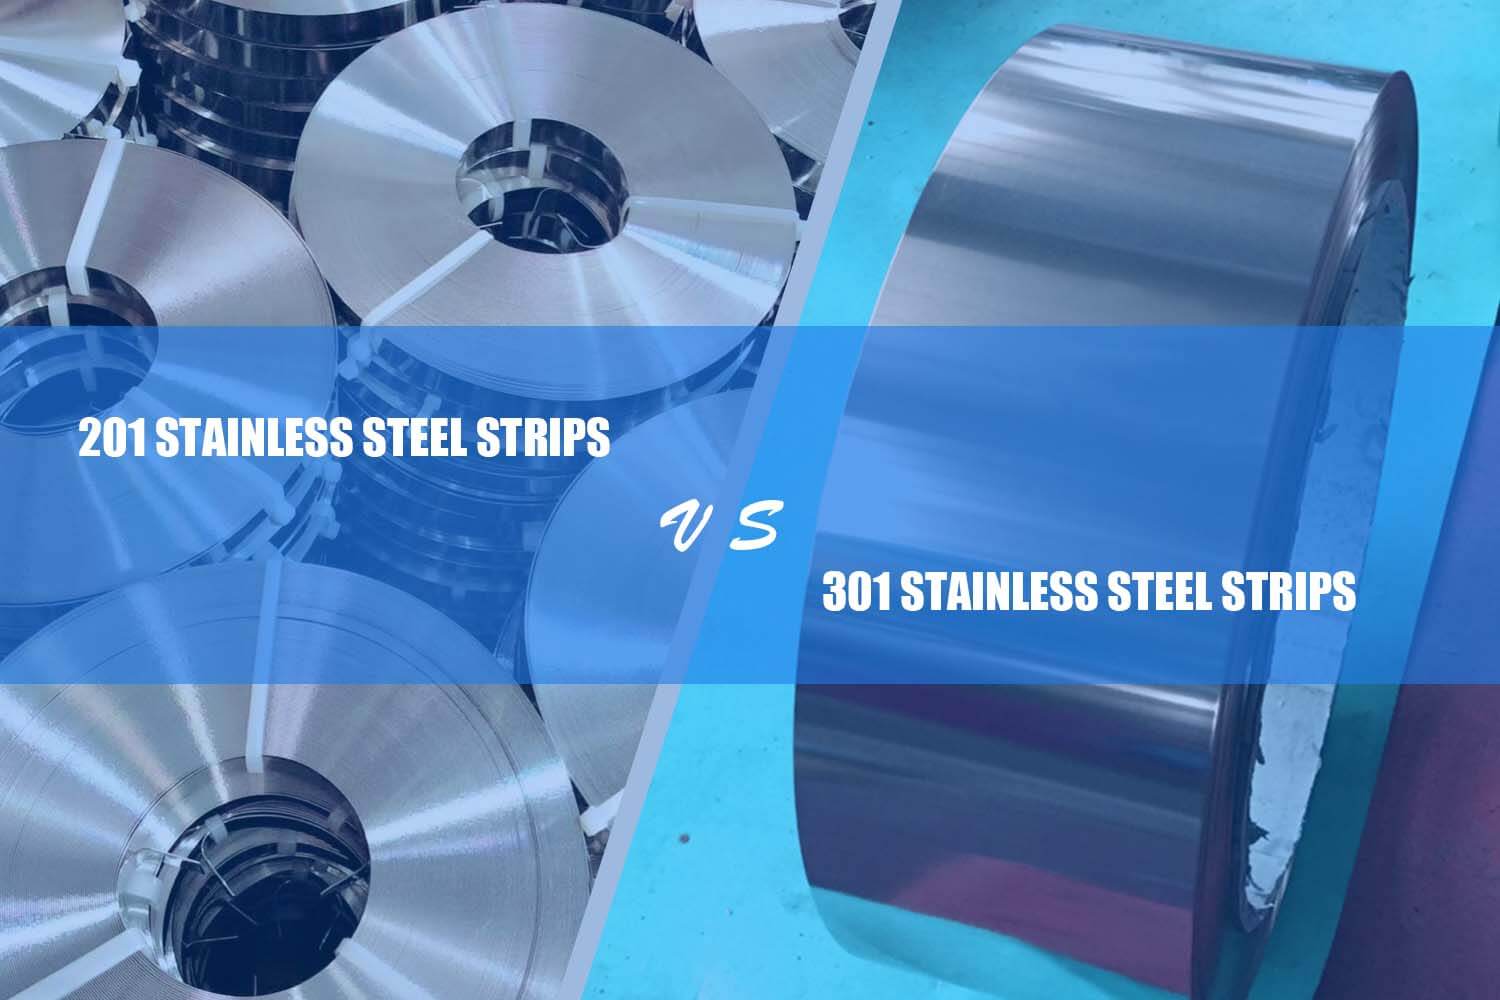 the difference between 201 rustfrit stål moderspoler købes fra kendte producenter som f.eks 301 rustfri stålbånd